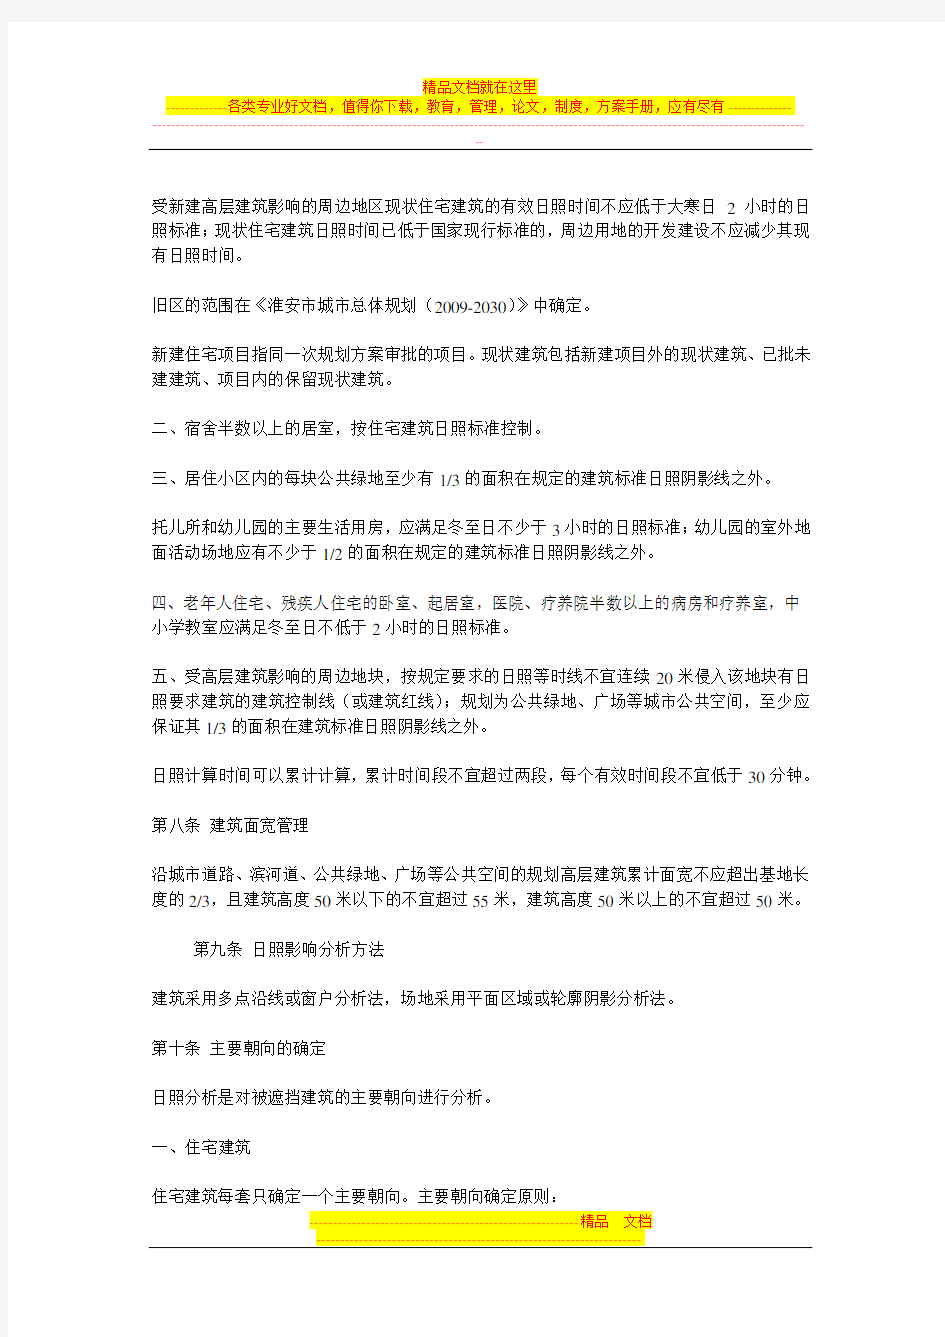 淮安市日照影响分析规划管理规定(2013年版)